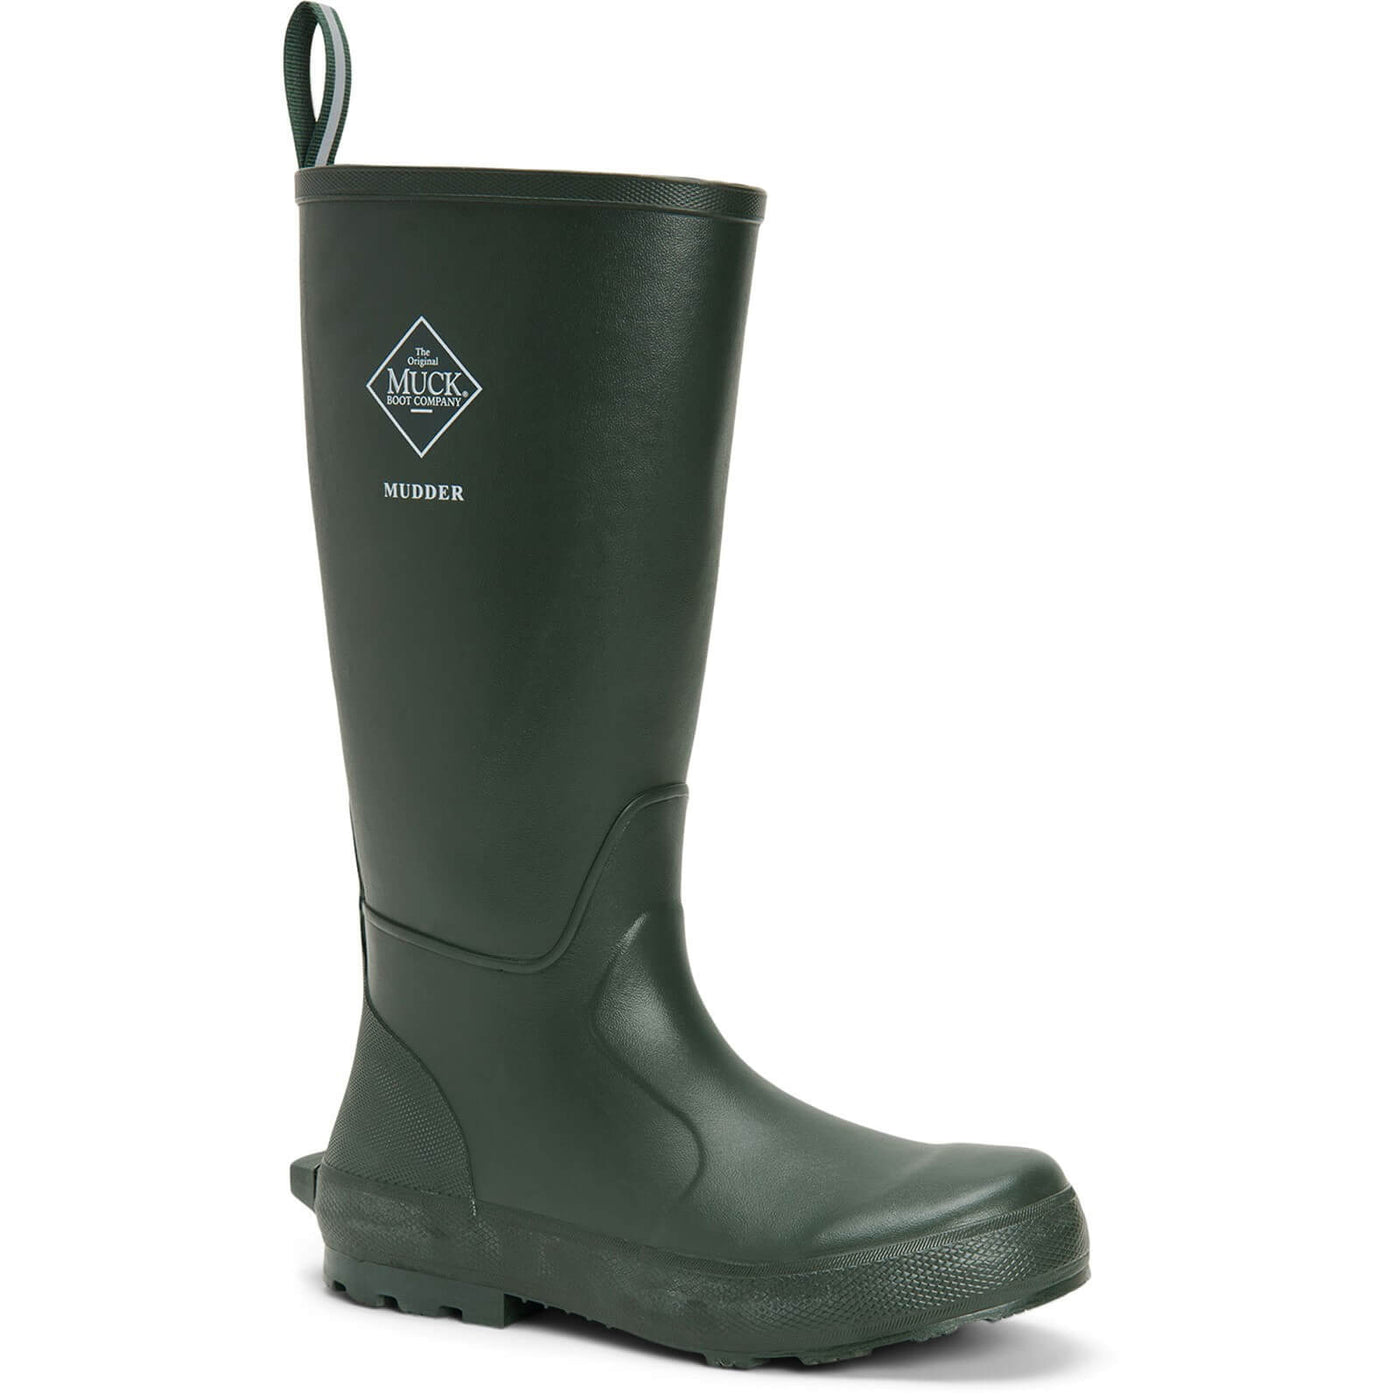 Muck Boots Mudder Tall Wellies Moss 1#colour_moss-army-green